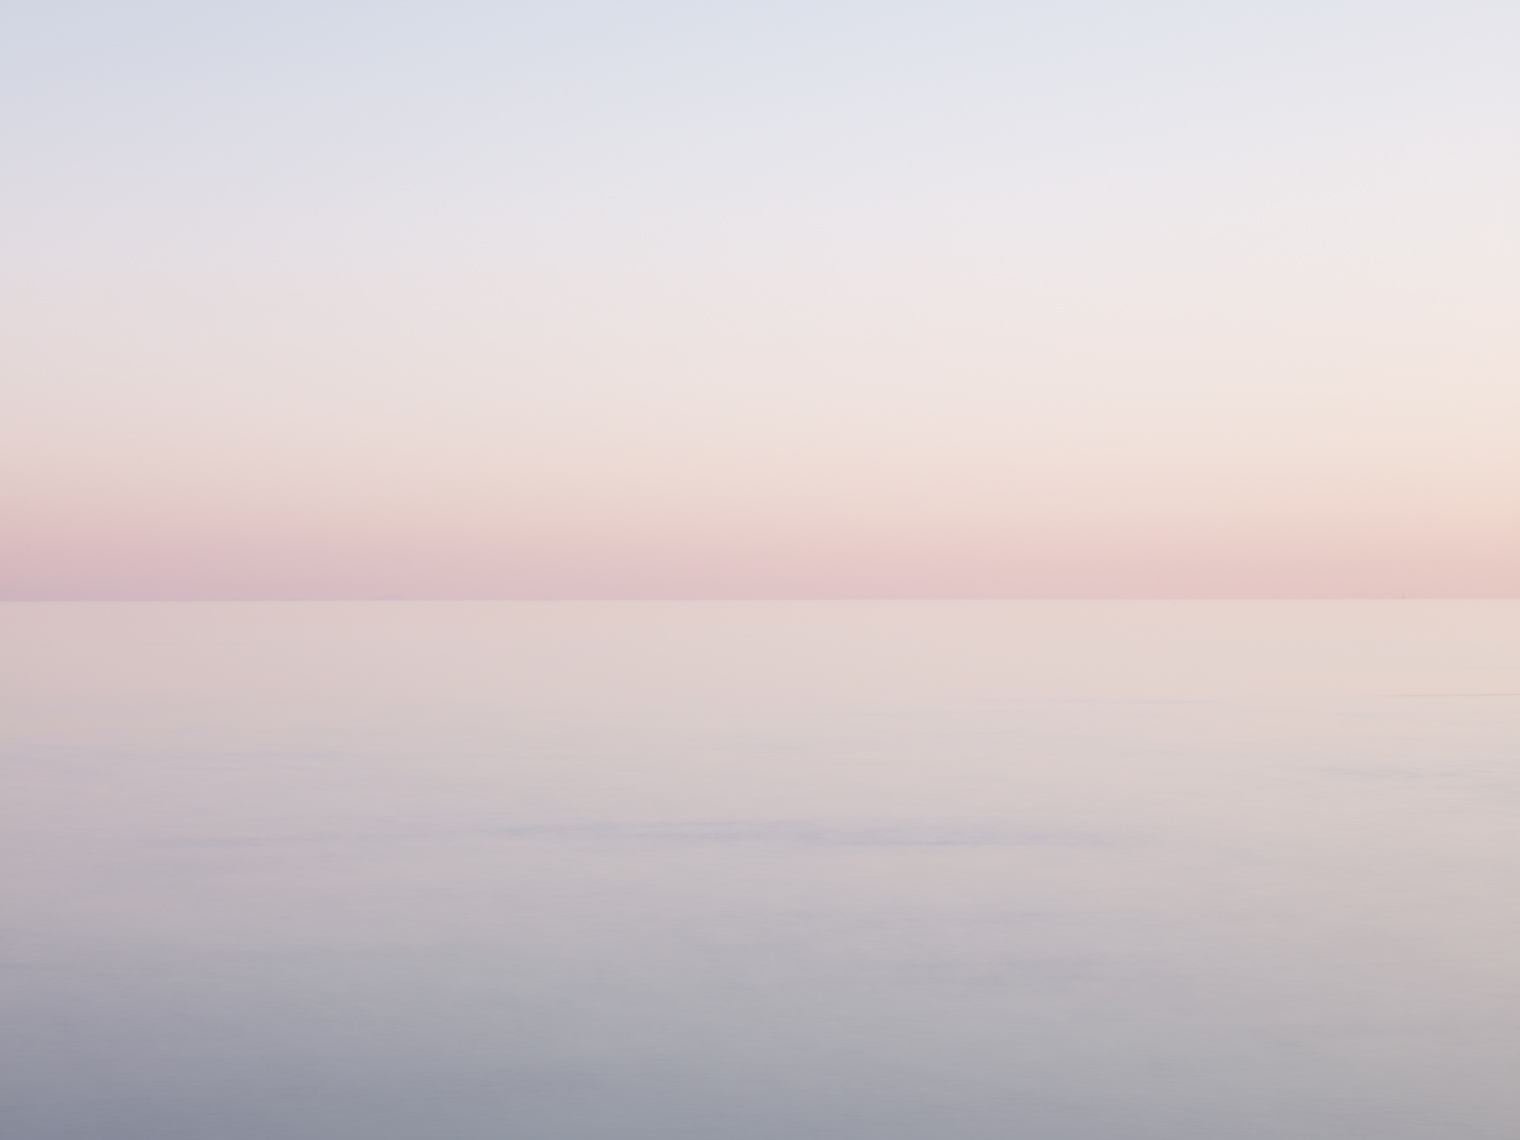 Jon Wyatt Photography - Sound of Jura III - sunset seascape of the Sound of Jura looking towards the Scottish mainland